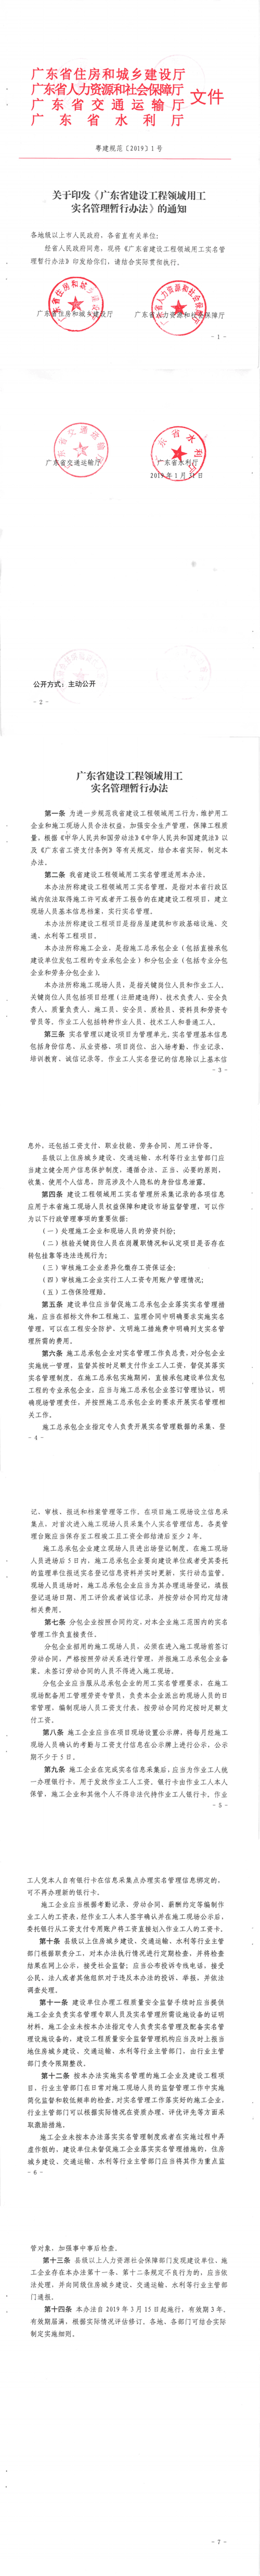 广东省建设工程领域用工实名管理暂行办法.gif